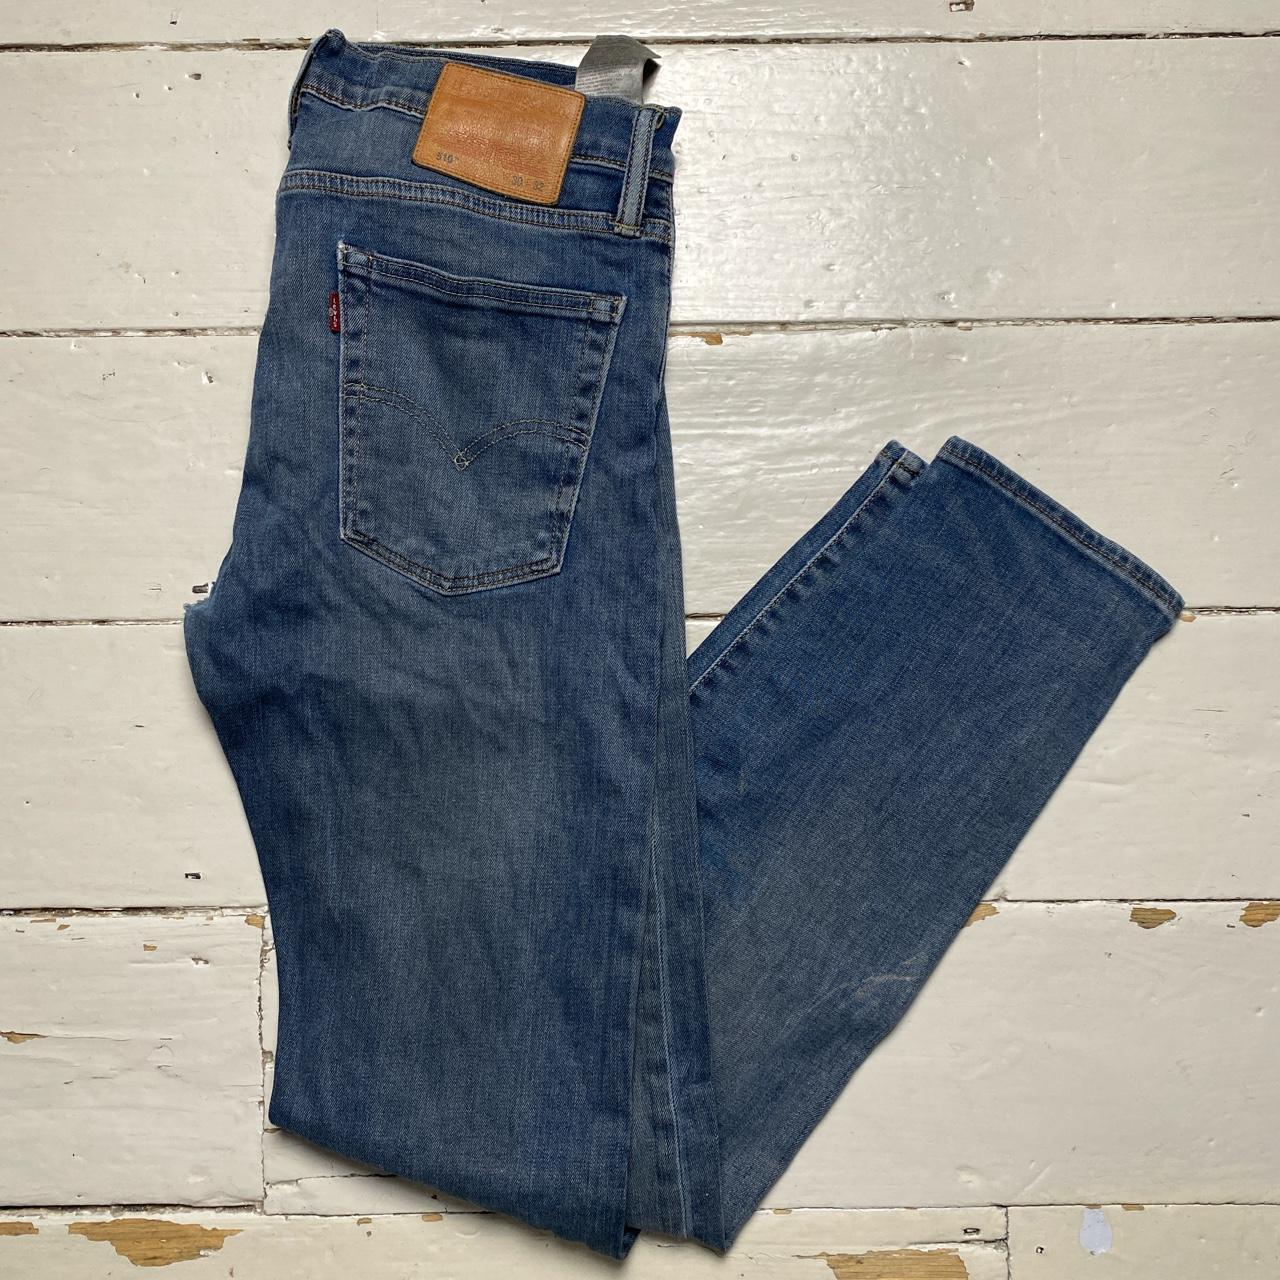 Levis 510 Slim Blue Jeans